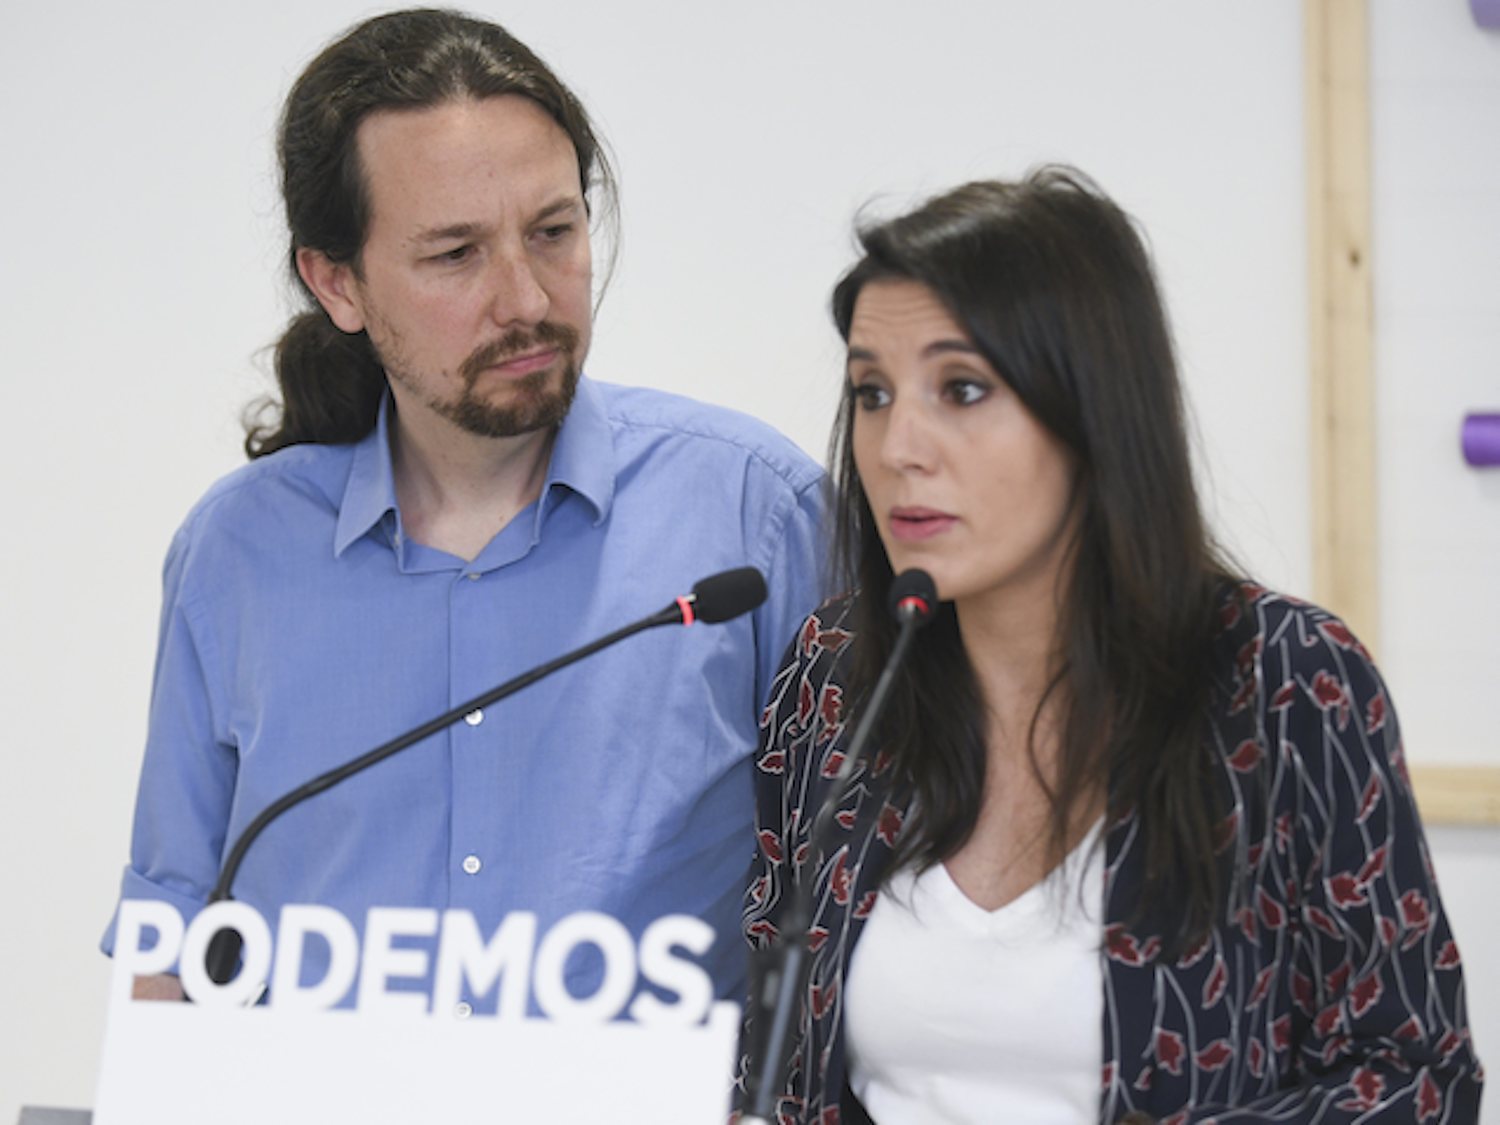 La verdad sobre el polémico vídeo en el que Pablo Iglesias "manda callar" a Irene Montero